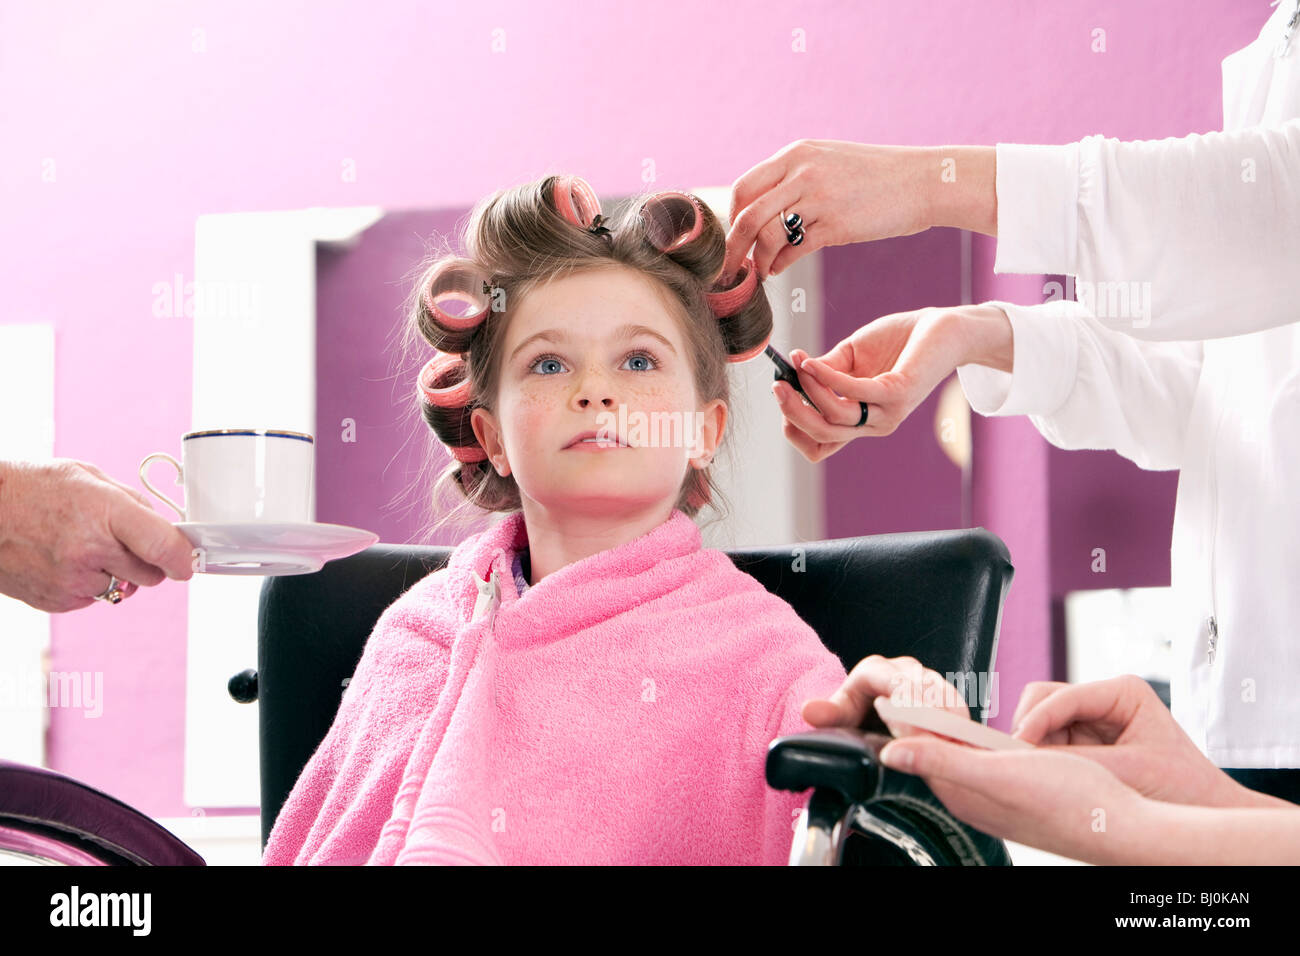 Porträt des jungen Mädchens im Friseursalon serviert wird Stockfoto